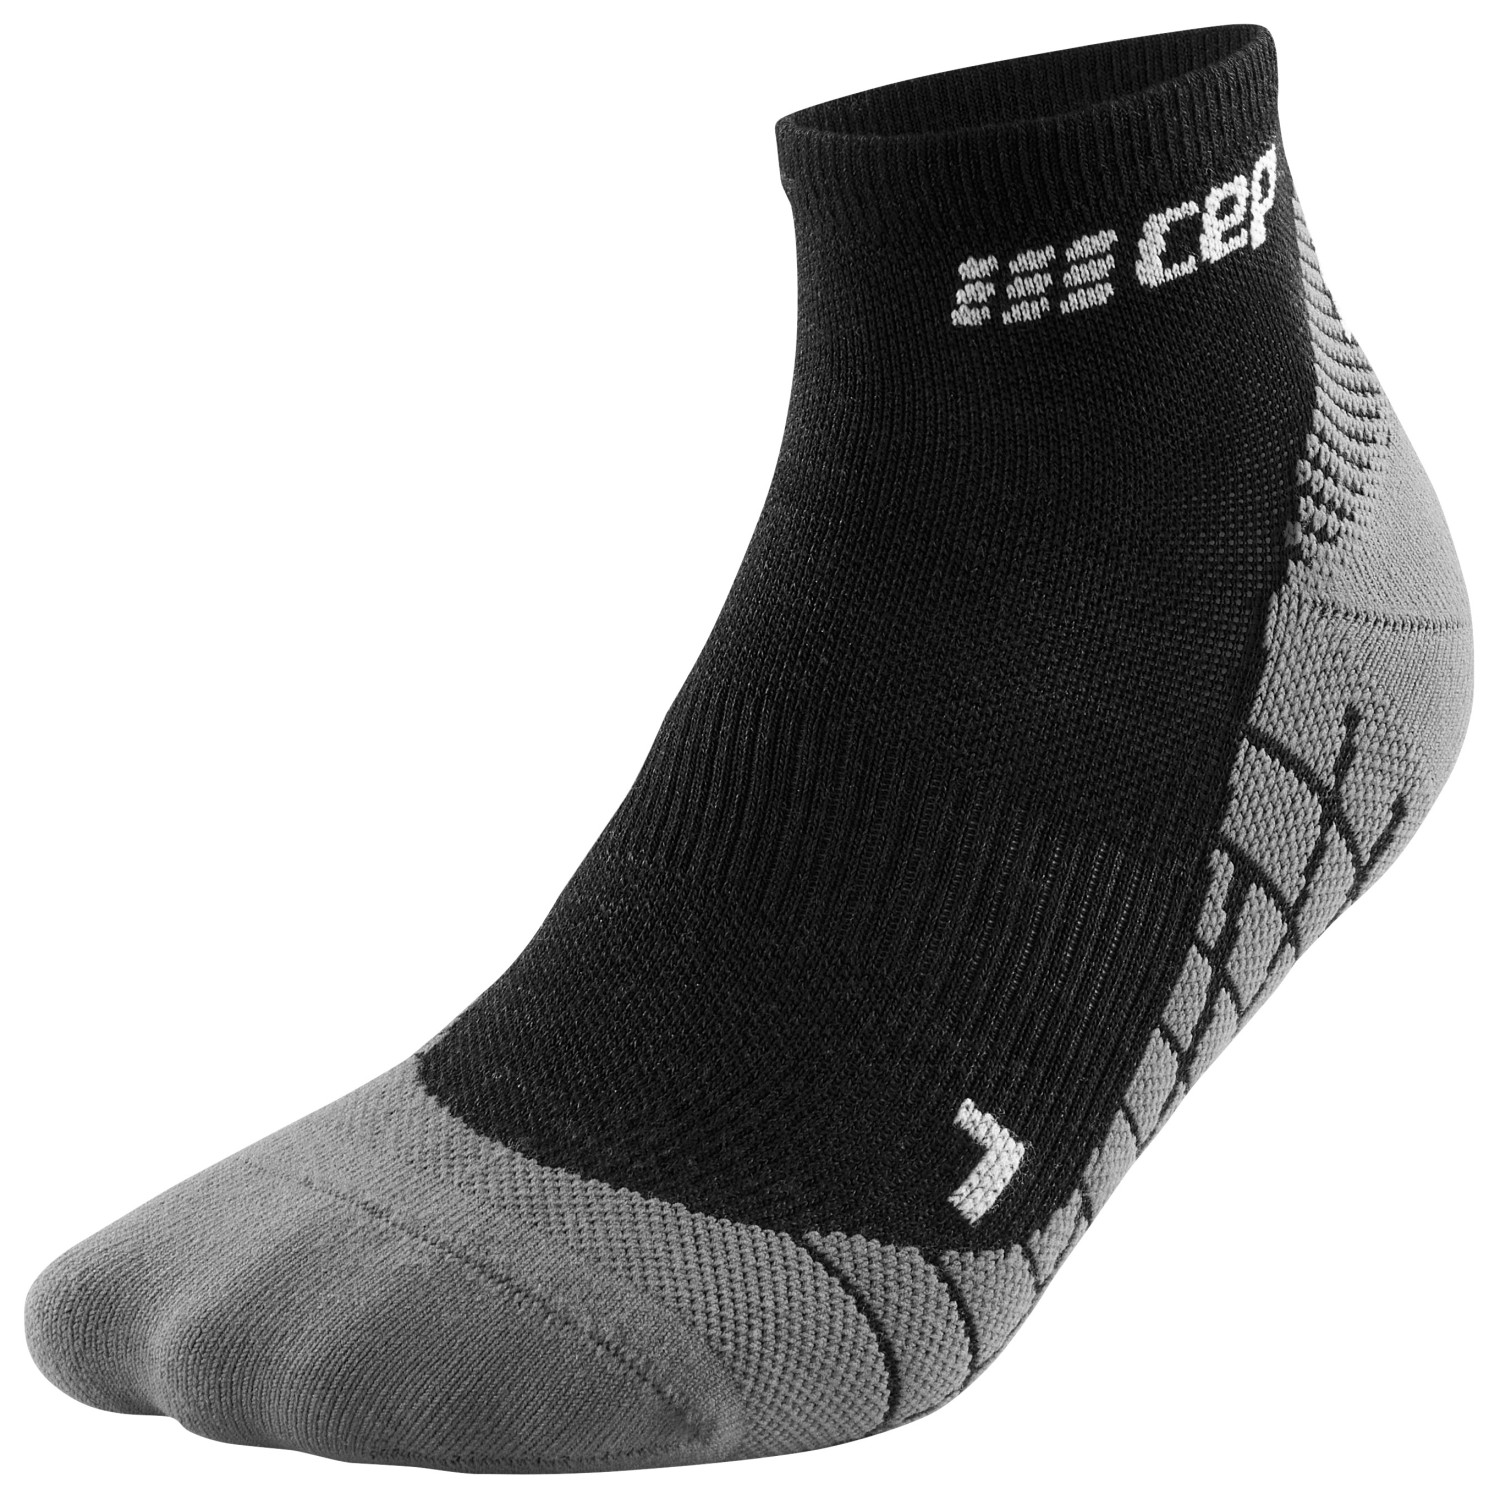 Походные носки Cep Cep Light Merino Socks Hiking Low Cut V3, черный